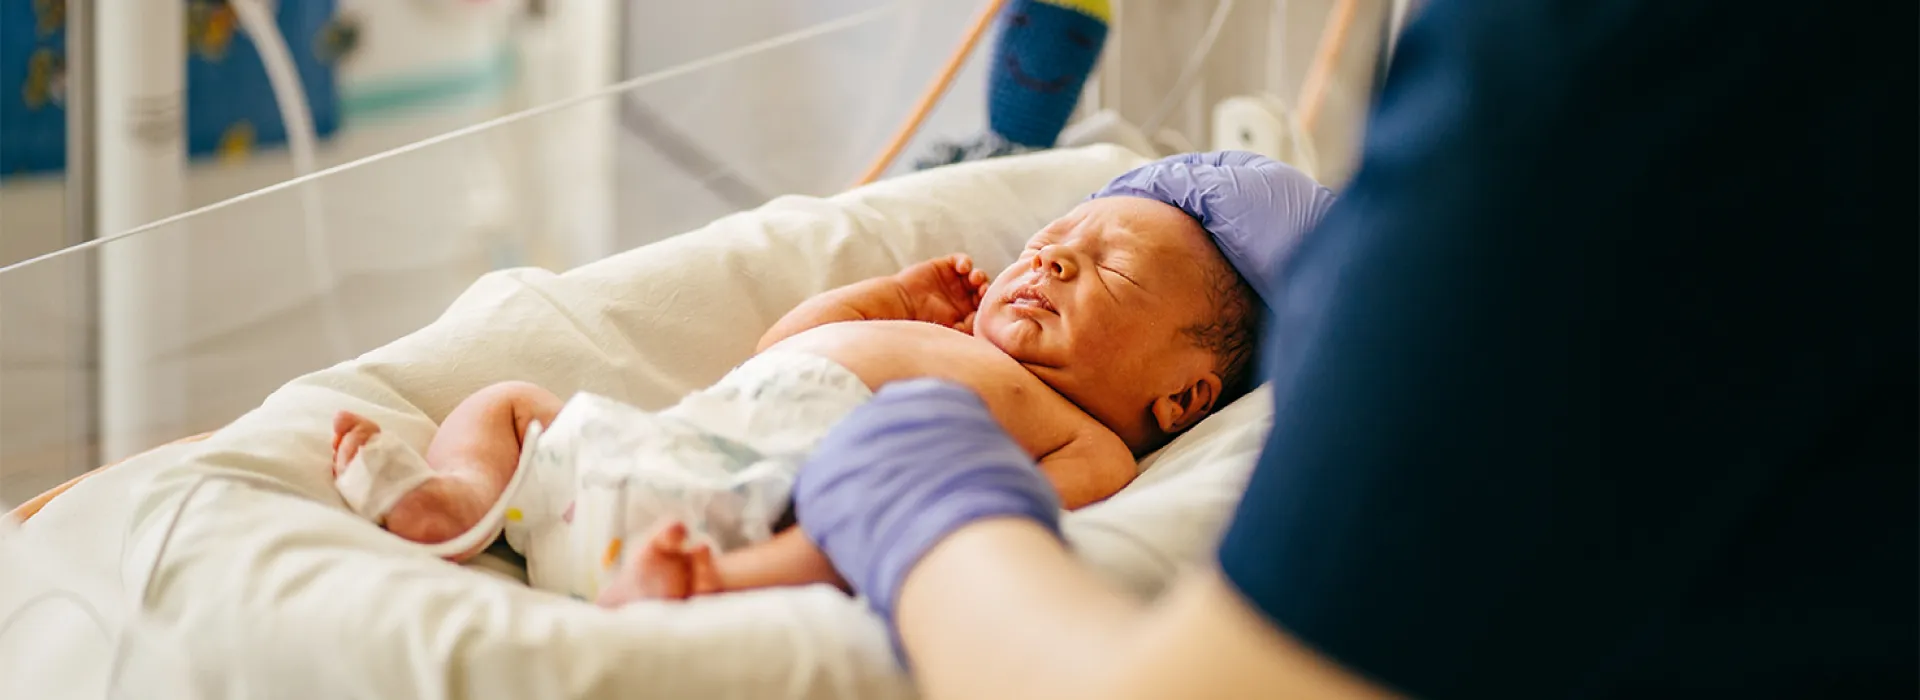 Diplomado virtual Seguimiento al bebe prematuro y de alto riesgo, mas allá del primer año de vida en convenio con Casa Madre Canguro Alfa